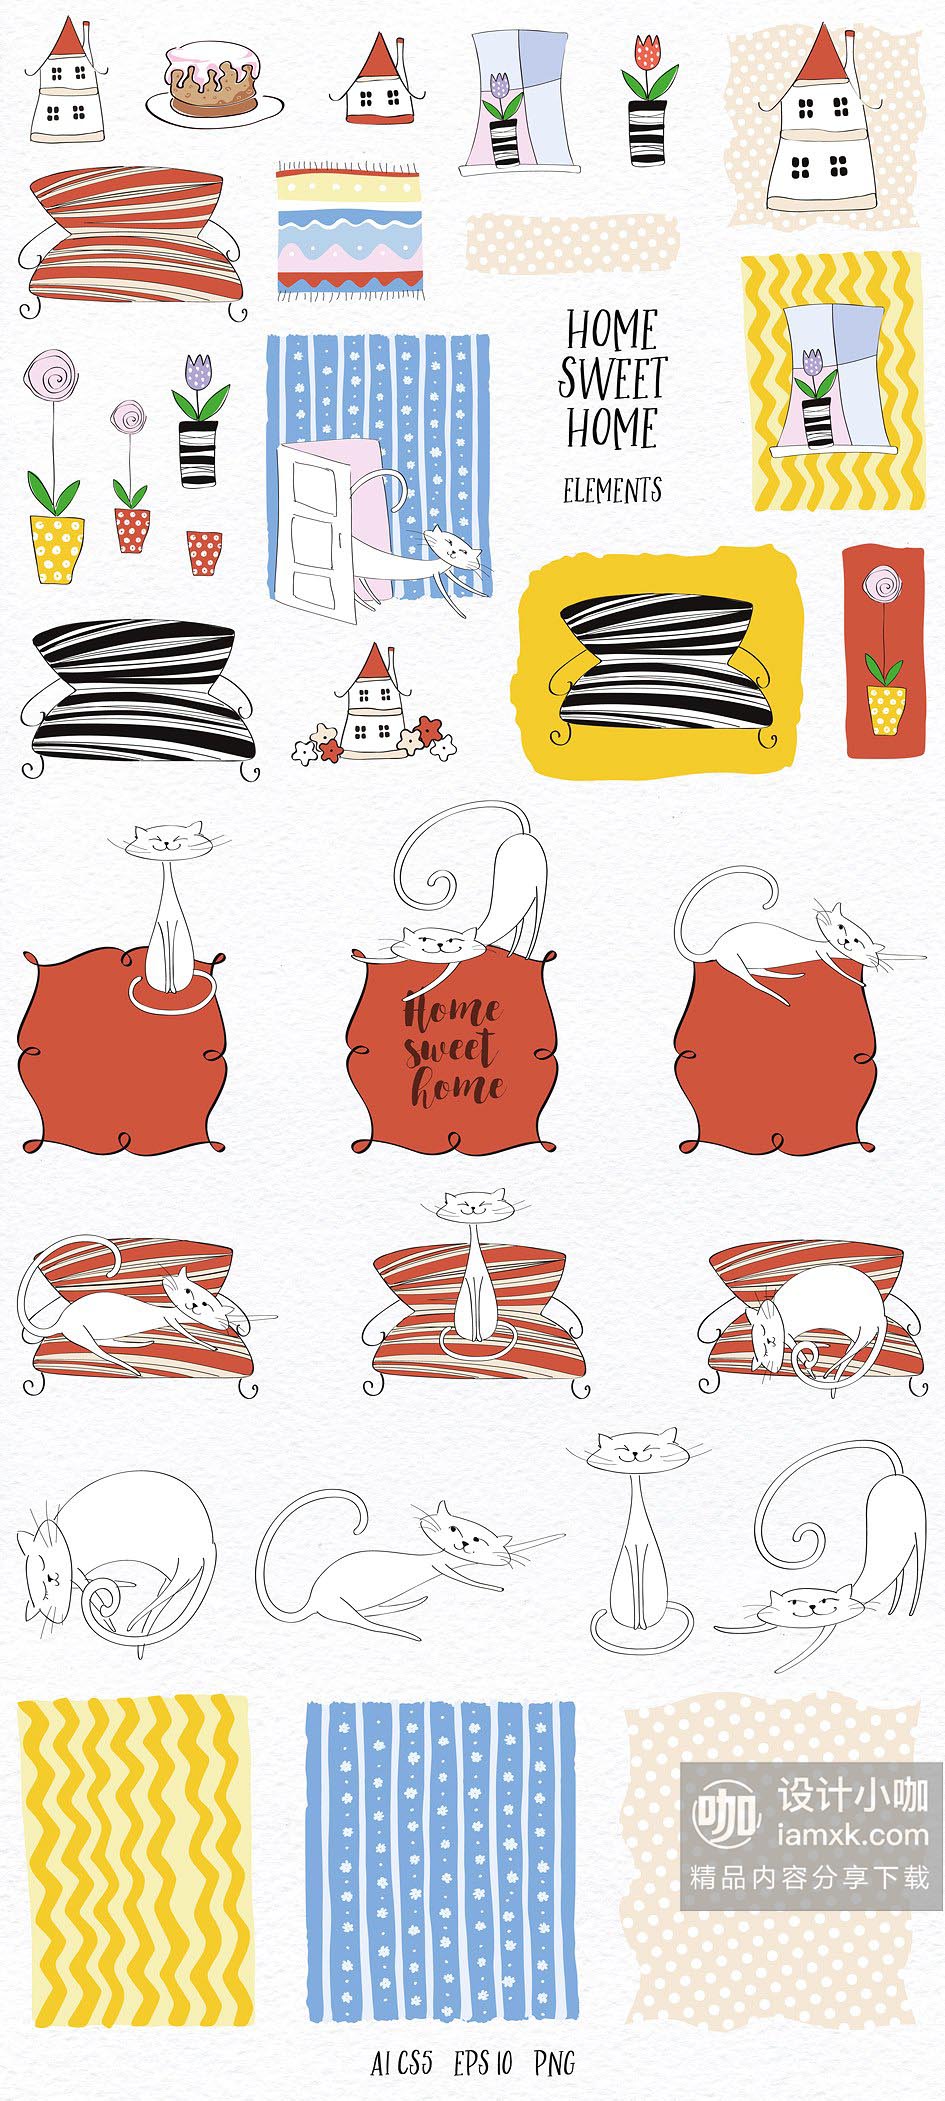 有趣的爱心冬季圣诞节情人节节日素材包下载[EPS,JPG]插图(7)